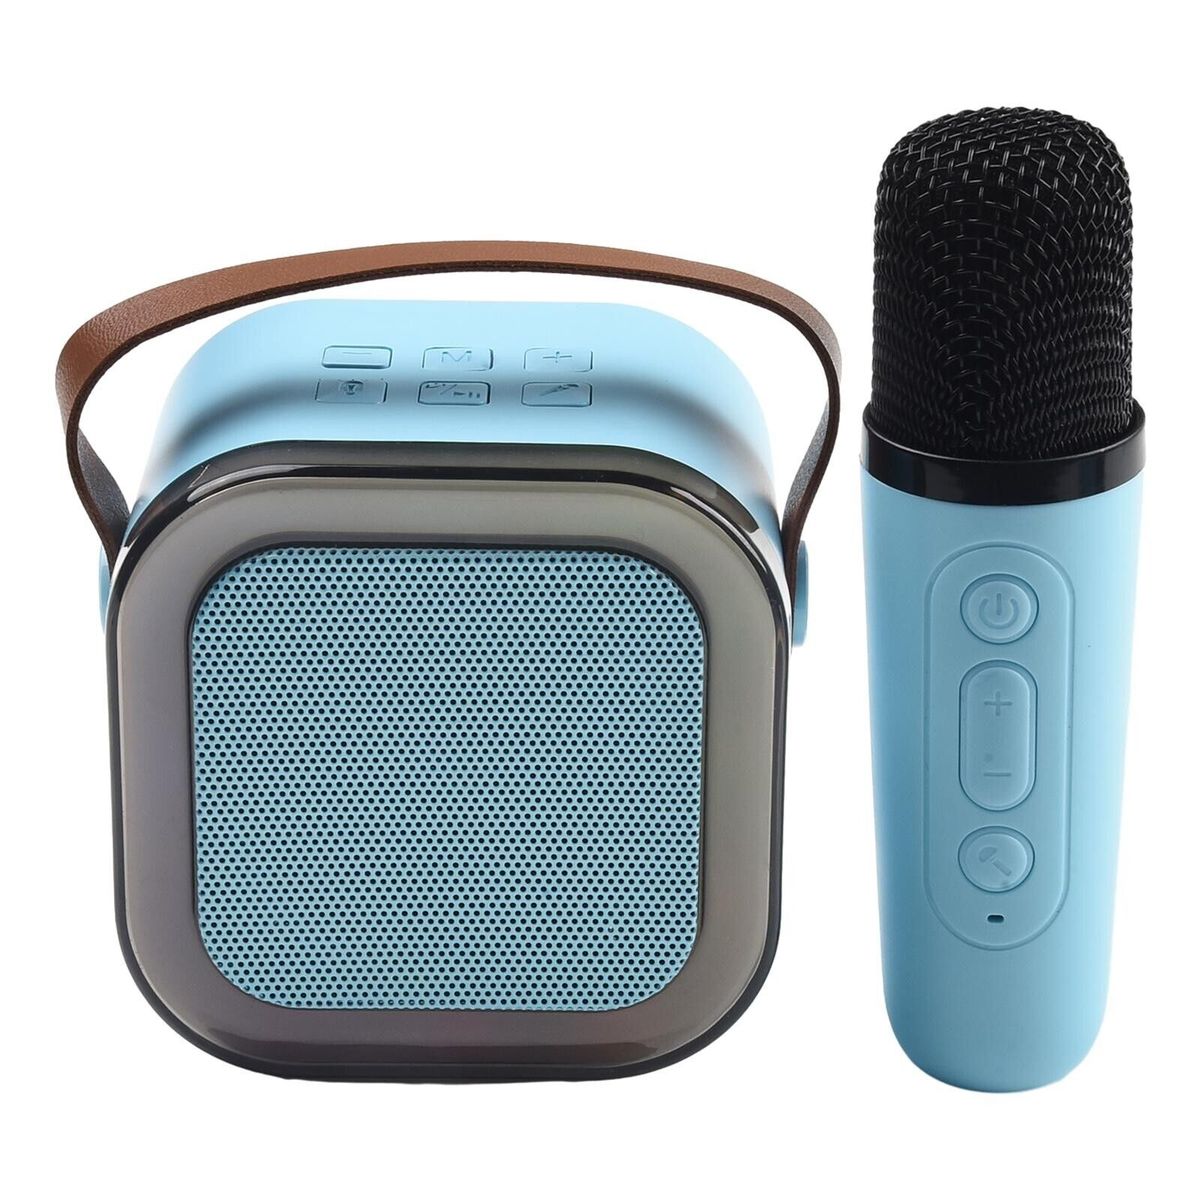 Karaoke Sound System Machine with Wireless Mic | Shop Today. Get it ...